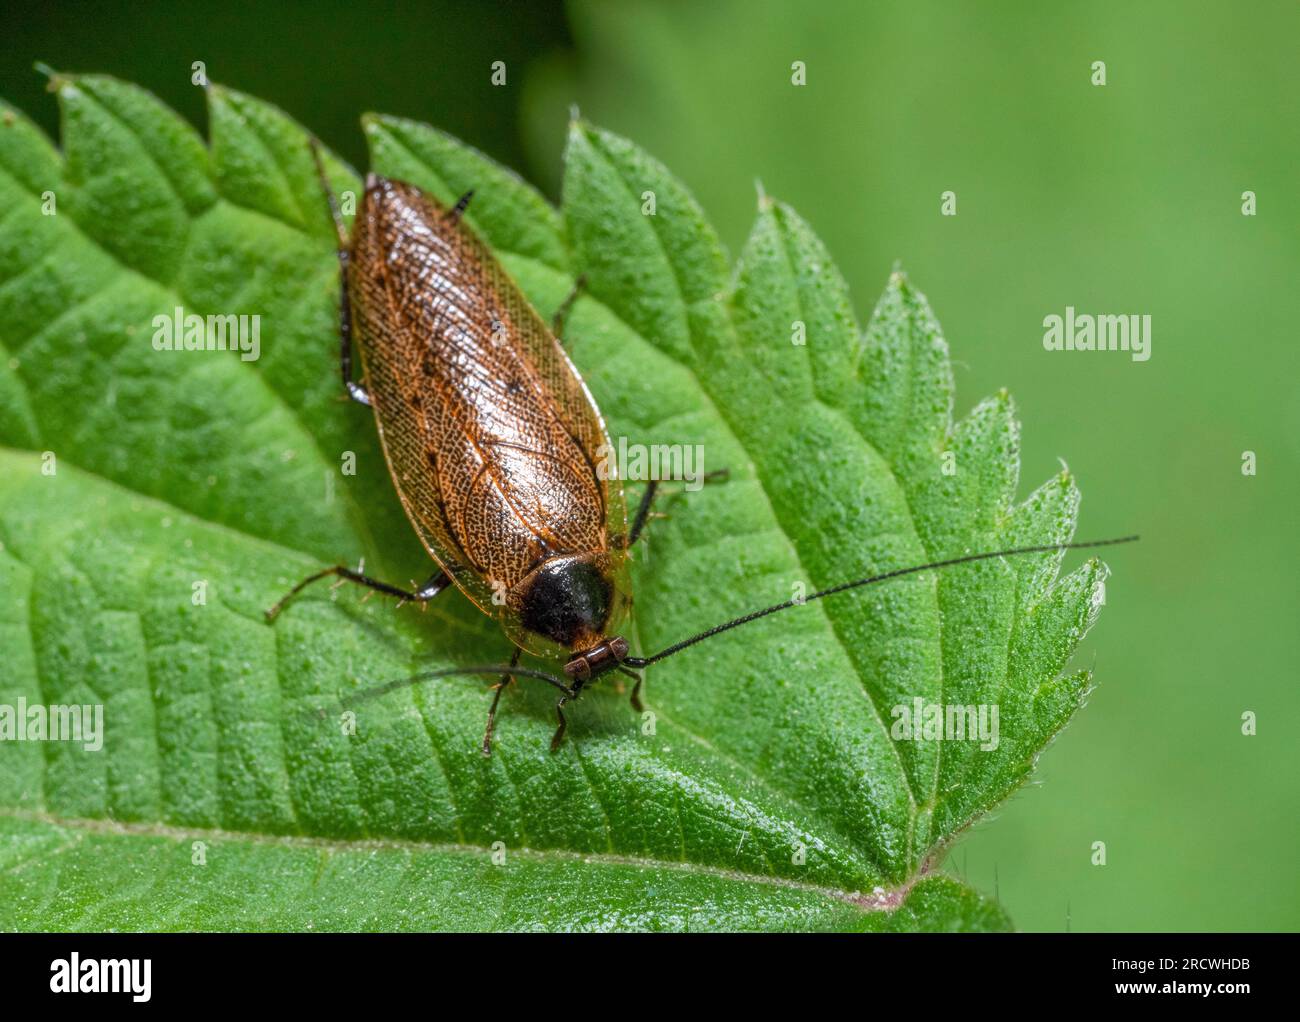 foto macro di uno scarafaggio stupido su una foglia di ortica verde pungente vista dall'alto Foto Stock